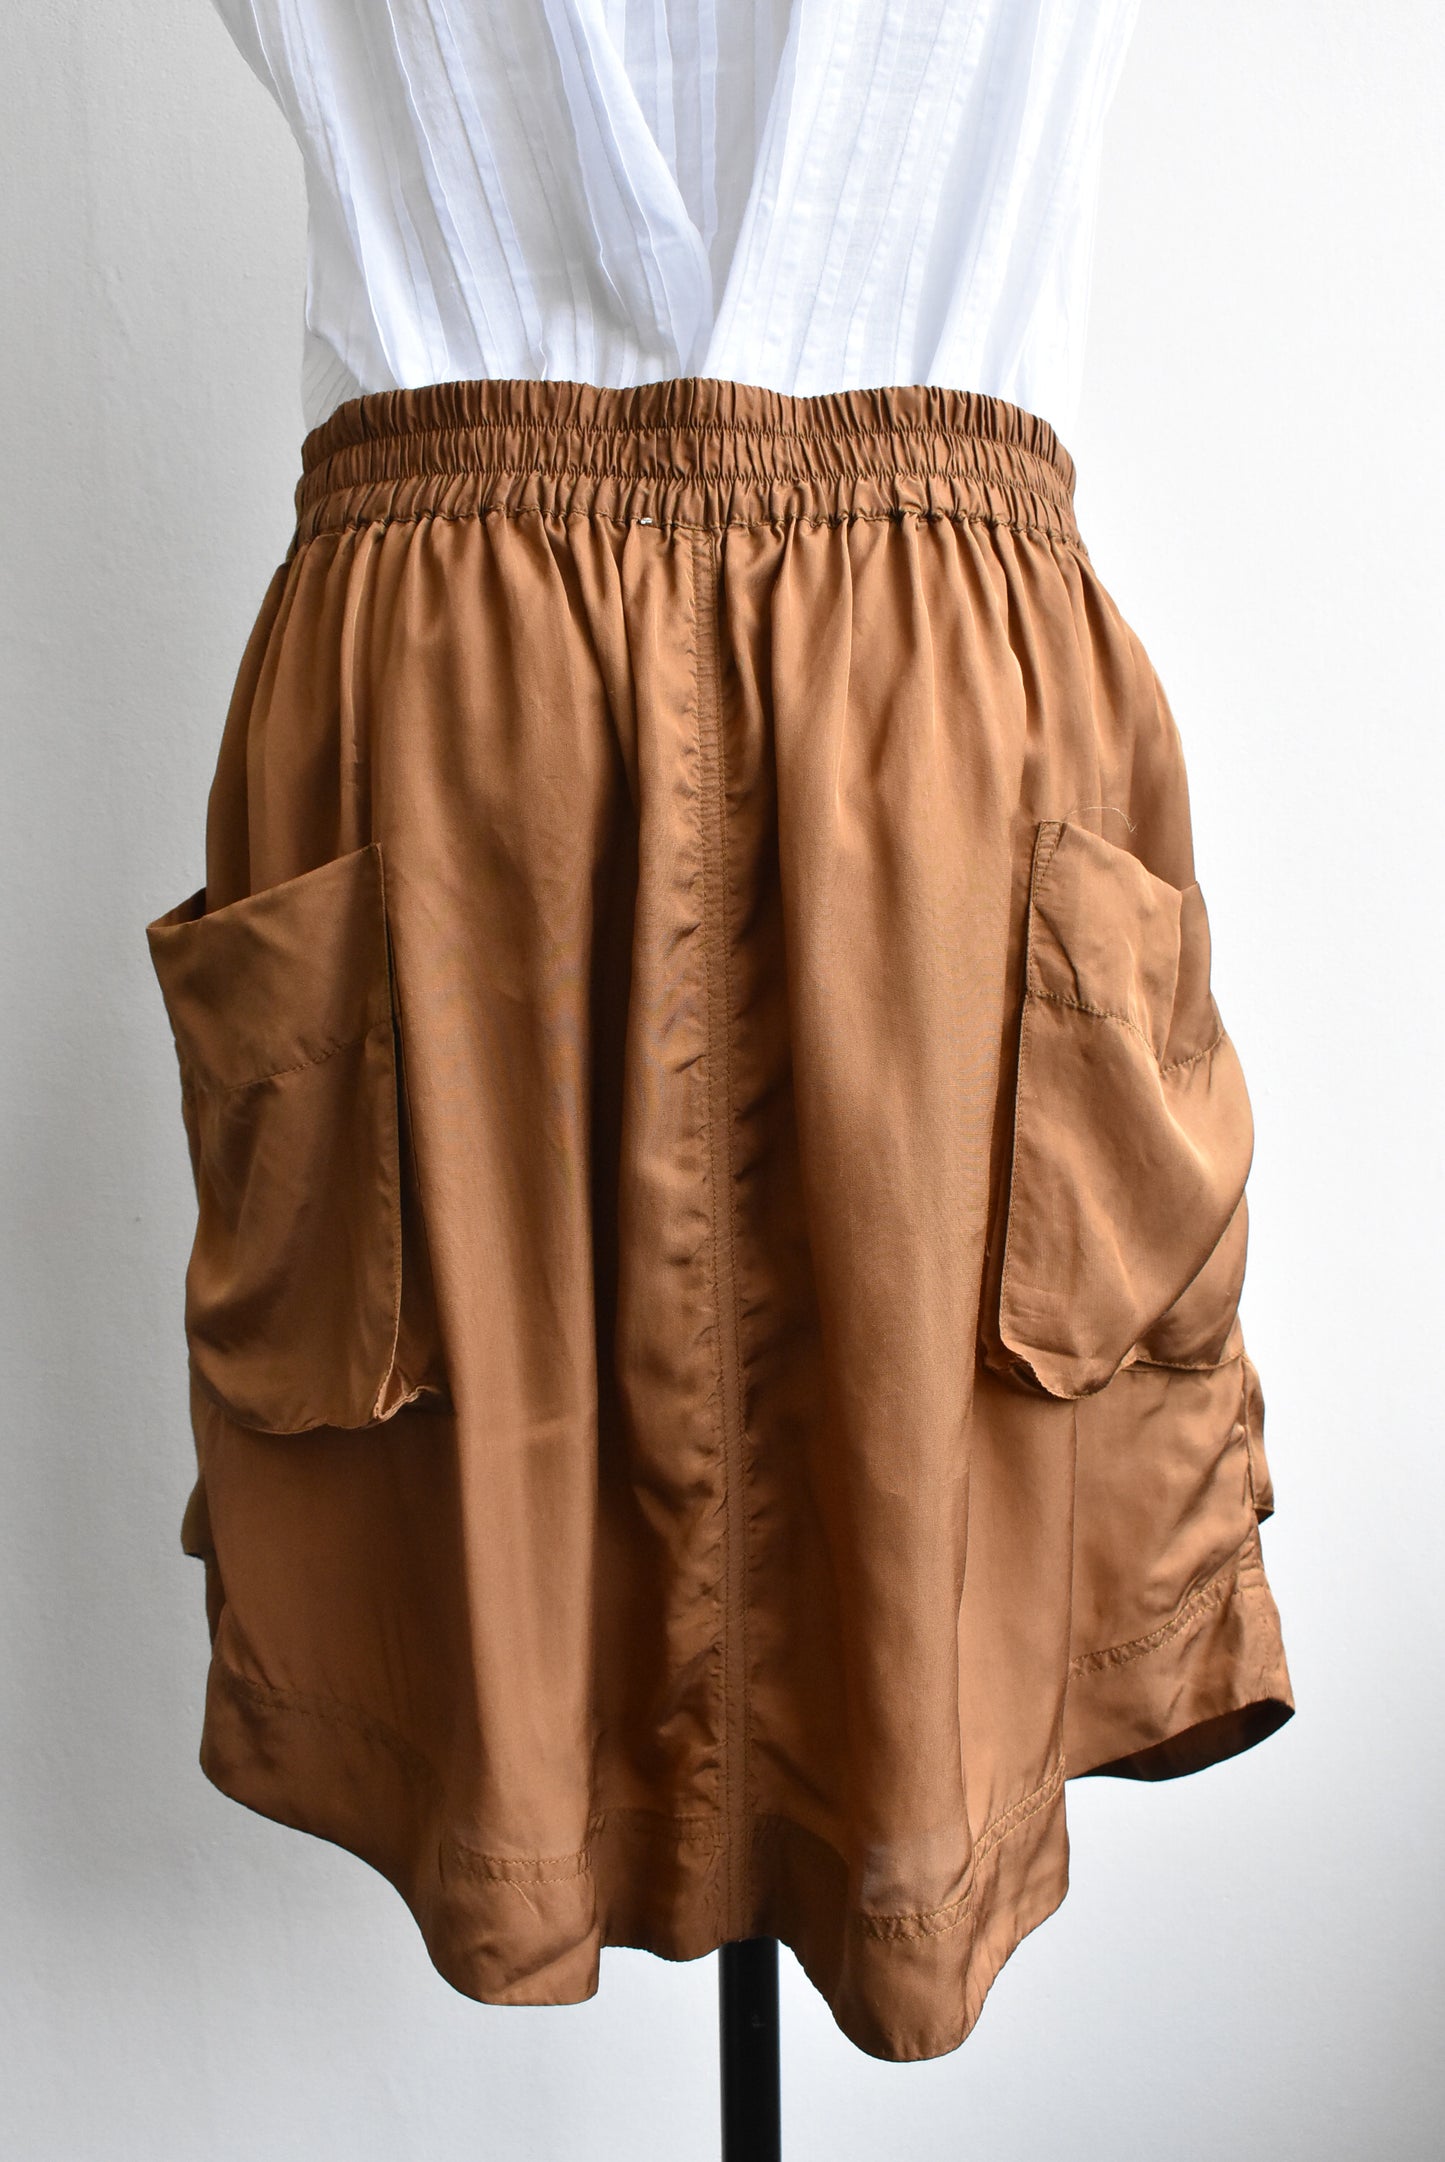 Lee Mathews 100% silk skirt, size S